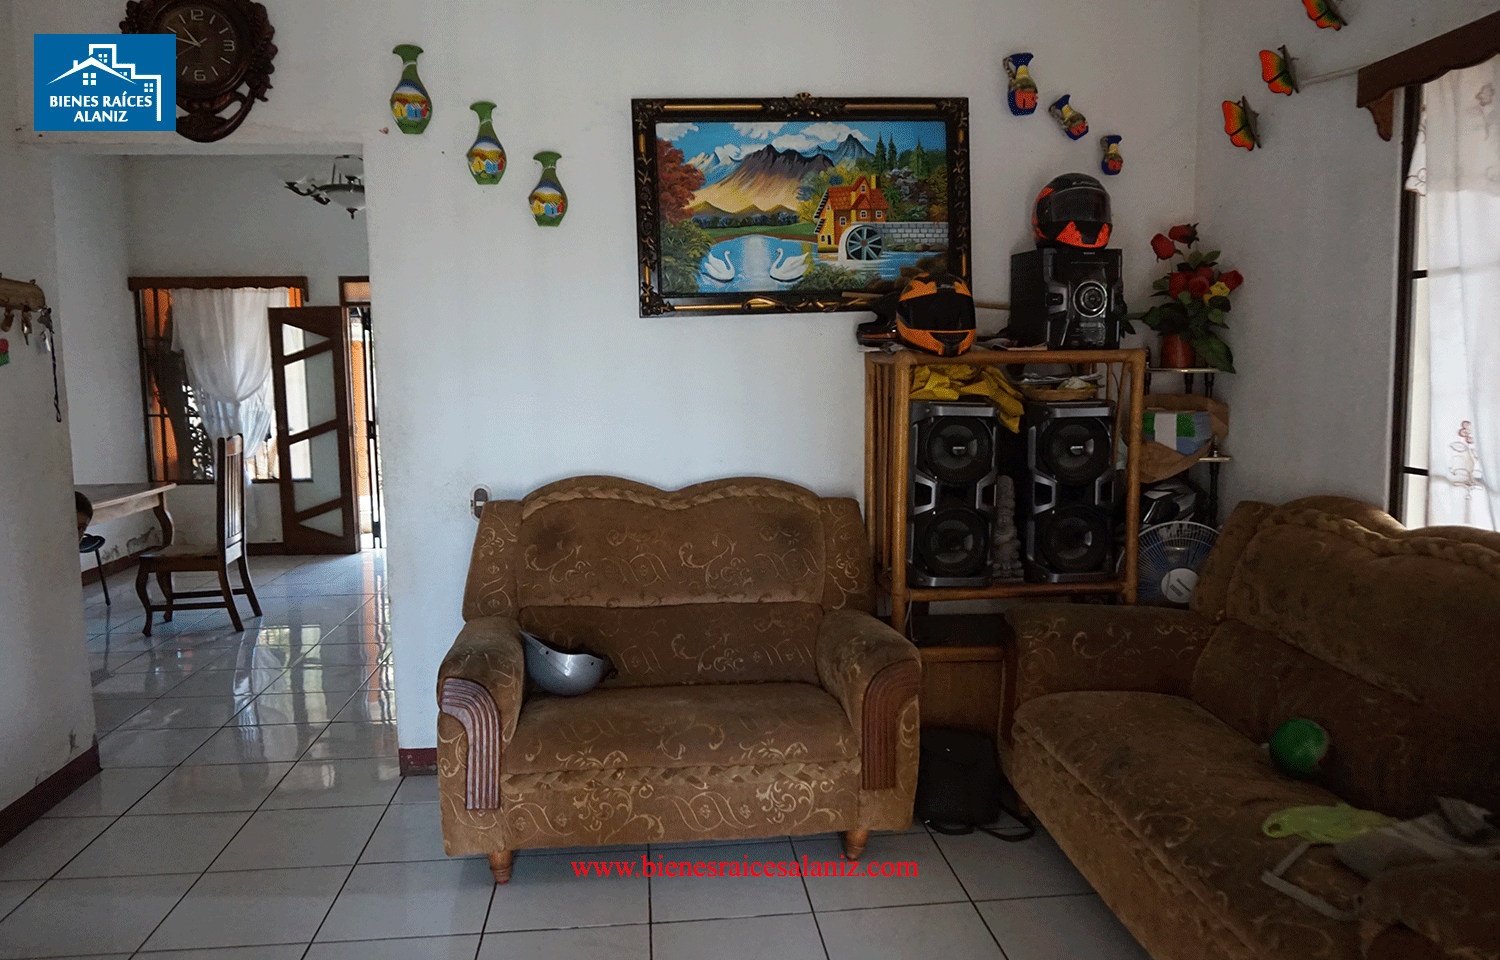 Se vende casa en León, Nicaragua. – Bienes Raíces Alaniz